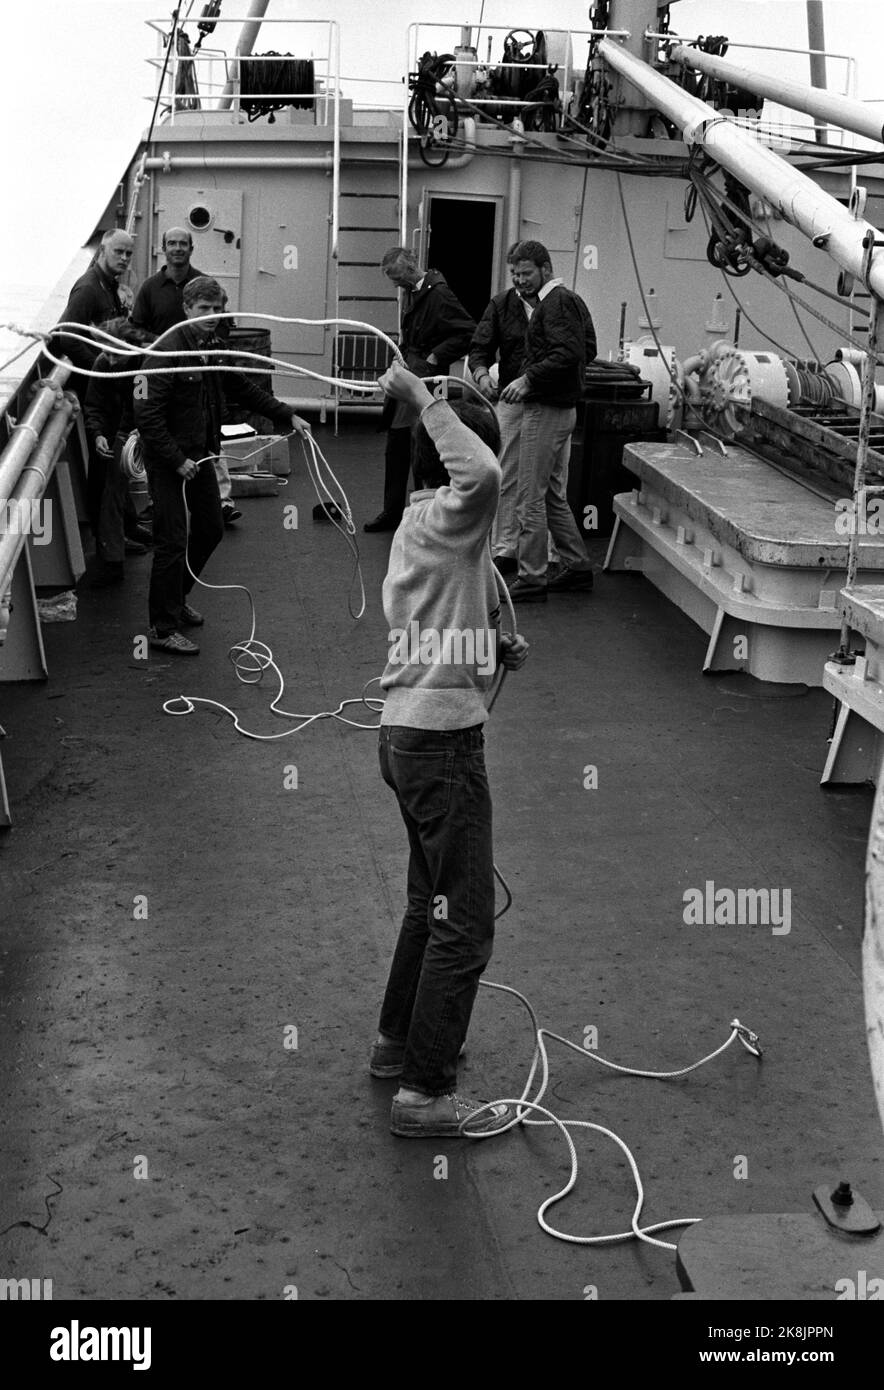 Groenlandia settembre 1969 per la prima volta, l'attenzione sarà dedicata al muschio in Norvegia. 25 vitelli moschee sono prelevati dalla Groenlandia orientale a Moskusgården a Bardu. I vitelli muschio devono essere catturati con il lazo, anestetizzati e volare in elicottero per la raccolta sull'armonia della nave artica. L'equipaggio utilizza il proprio tempo libero per esercitarsi a lanciare il lazo per riuscire a catturare il muschio in modo efficace. Foto: Storløkken / corrente / NTB Foto Stock